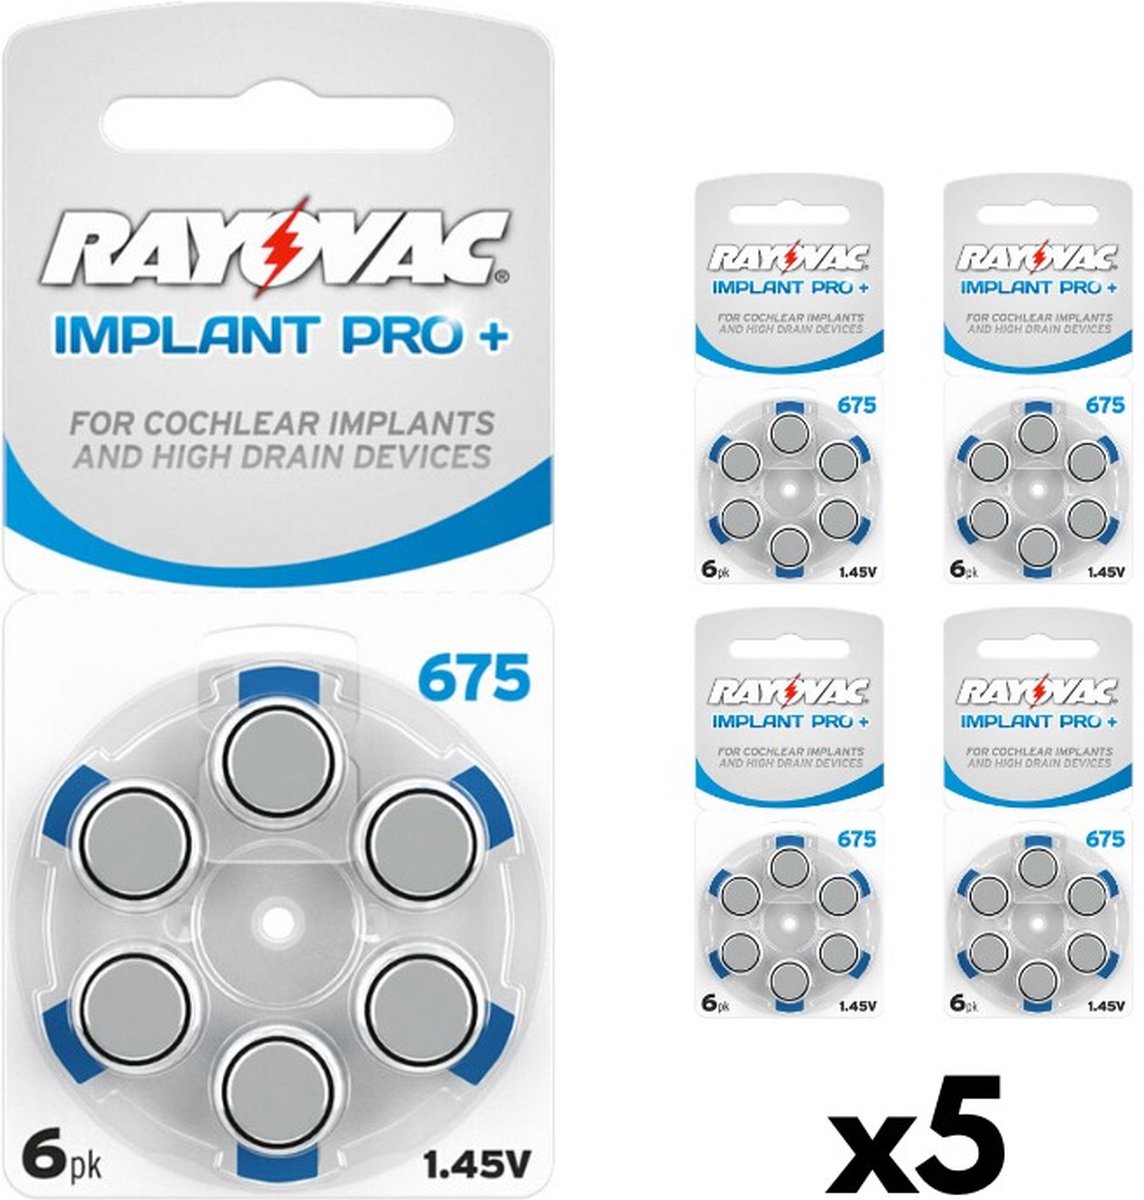 Hoortoestel batterijen Rayovac 675 Implant Pro+, 5 elektroden